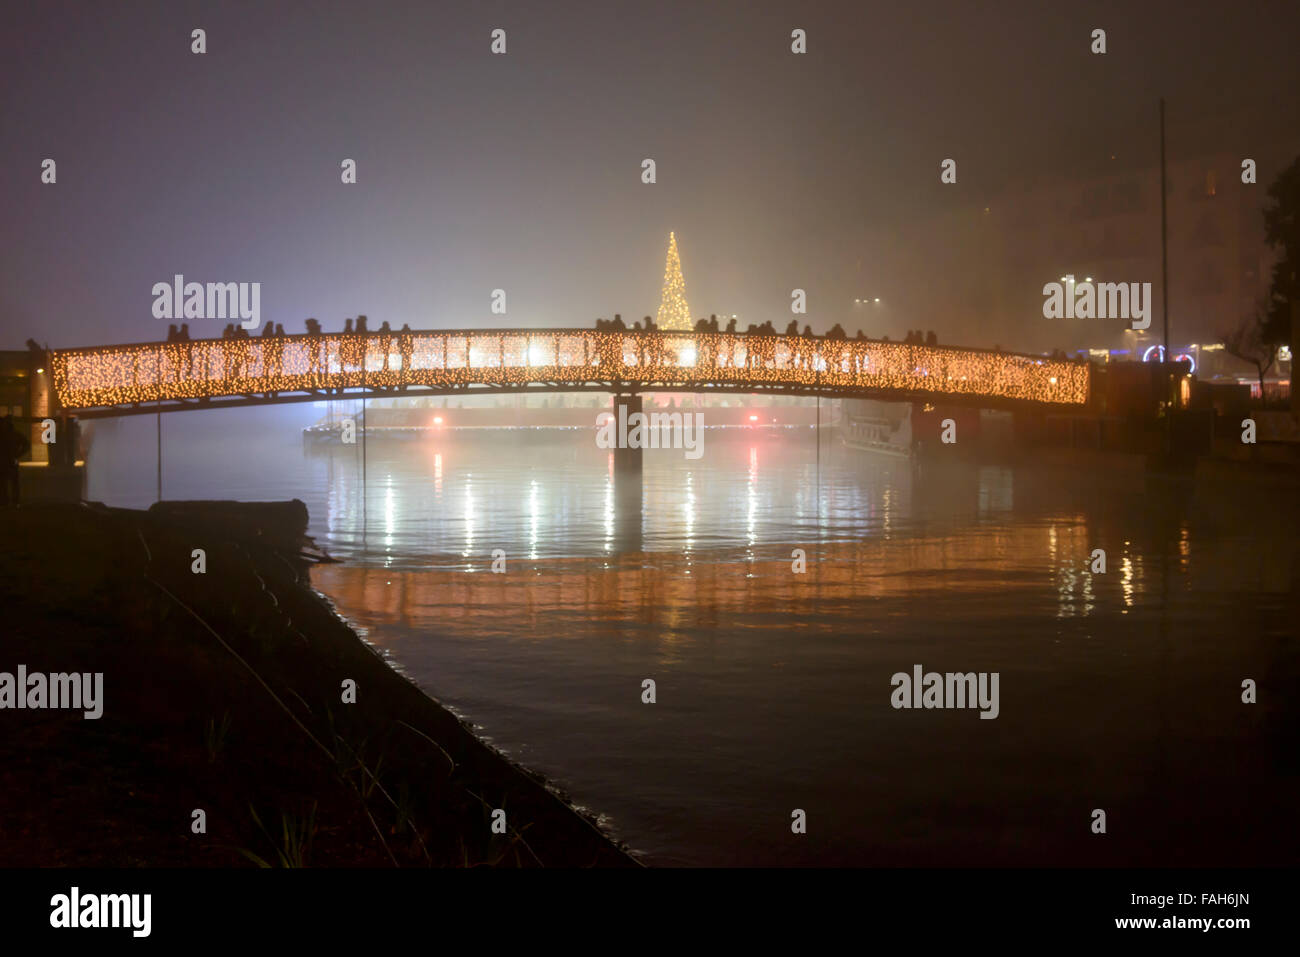 Mailand, Italien - 8. Dezember: Nachtleben im Stadtzentrum zu Weihnachtszeit, gehen die Menschen auf beleuchteten Brücke am restaurierten Darsena. Stockfoto